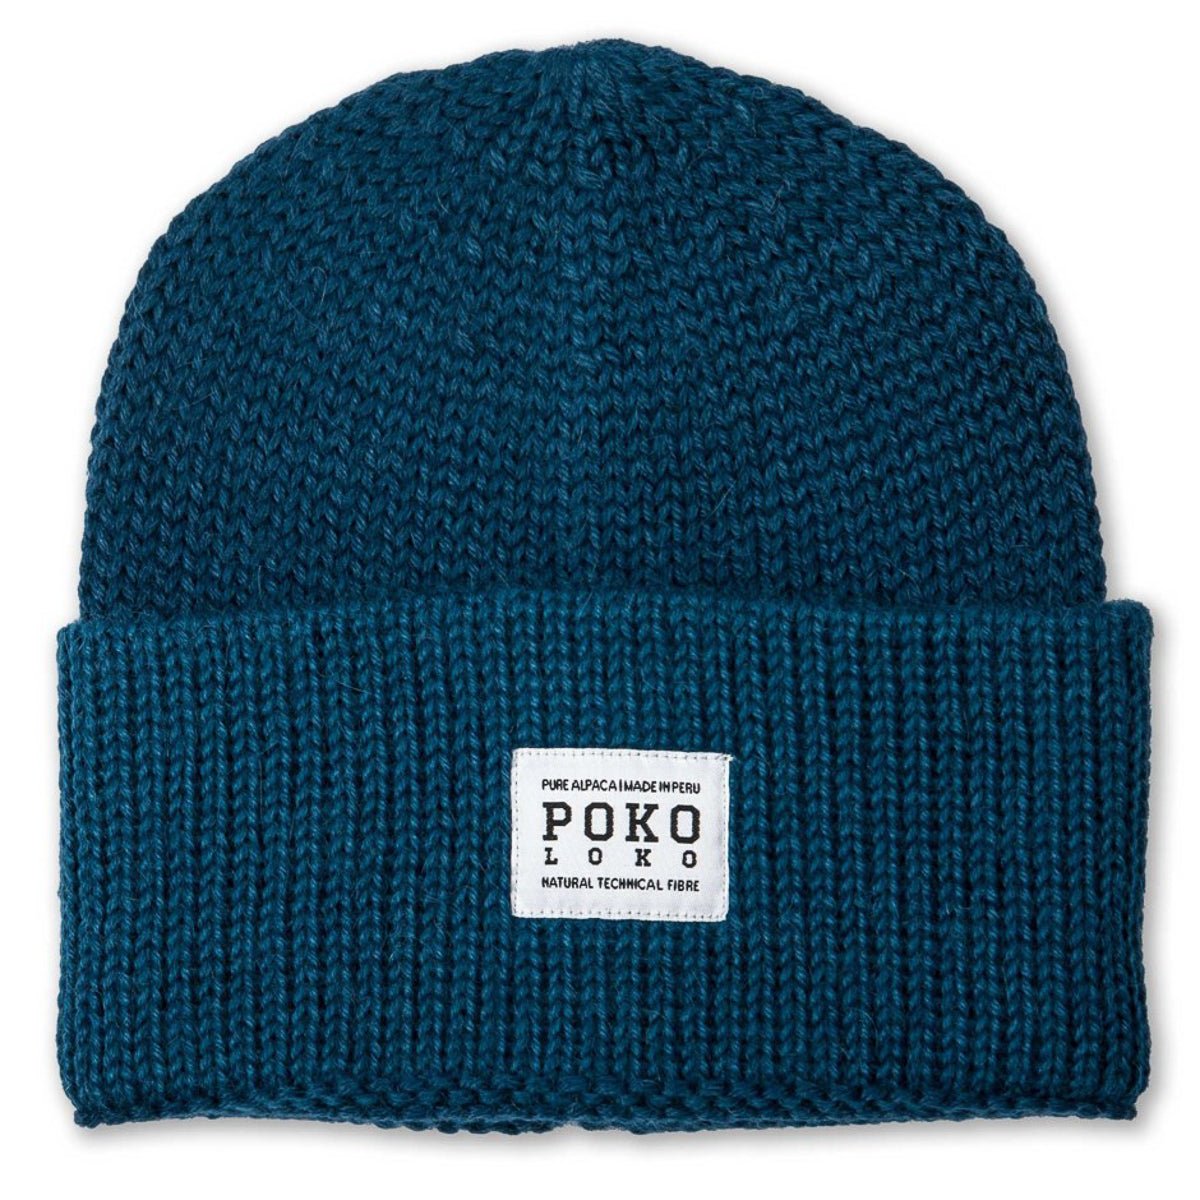 Tuque pur alpaga, chapeau de pêcheur unisexe - Boutique Equinoxe